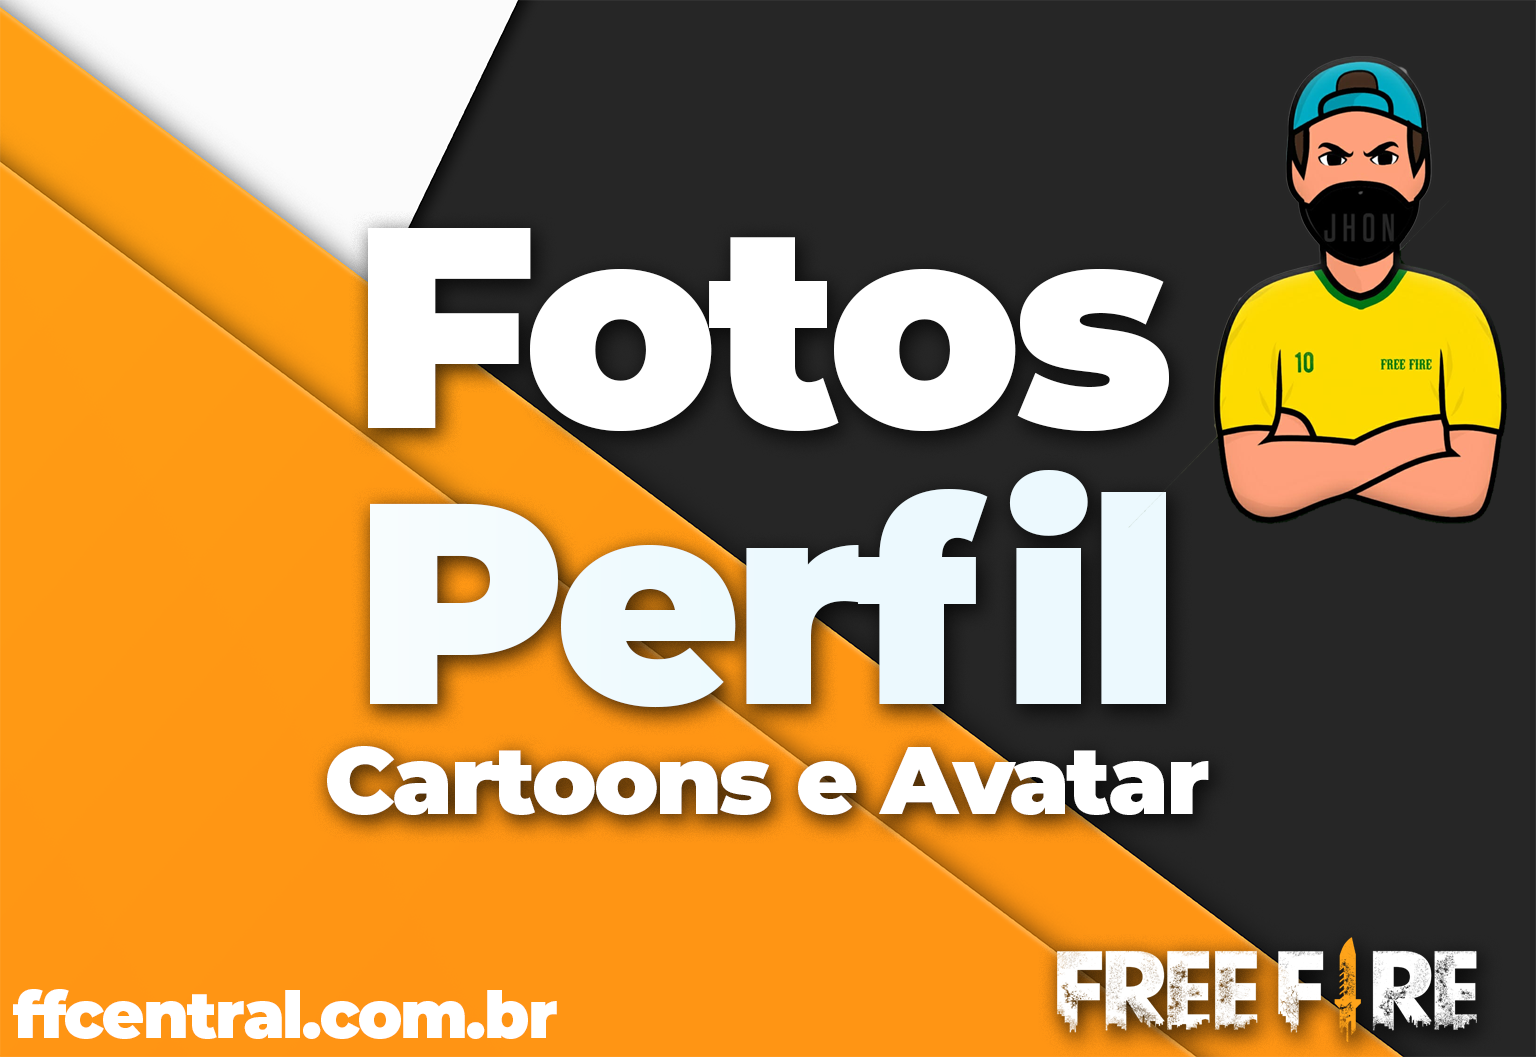 Fotos de perfil para Free Fire (Cartoons e Avatar de FF) - Free Fire Central